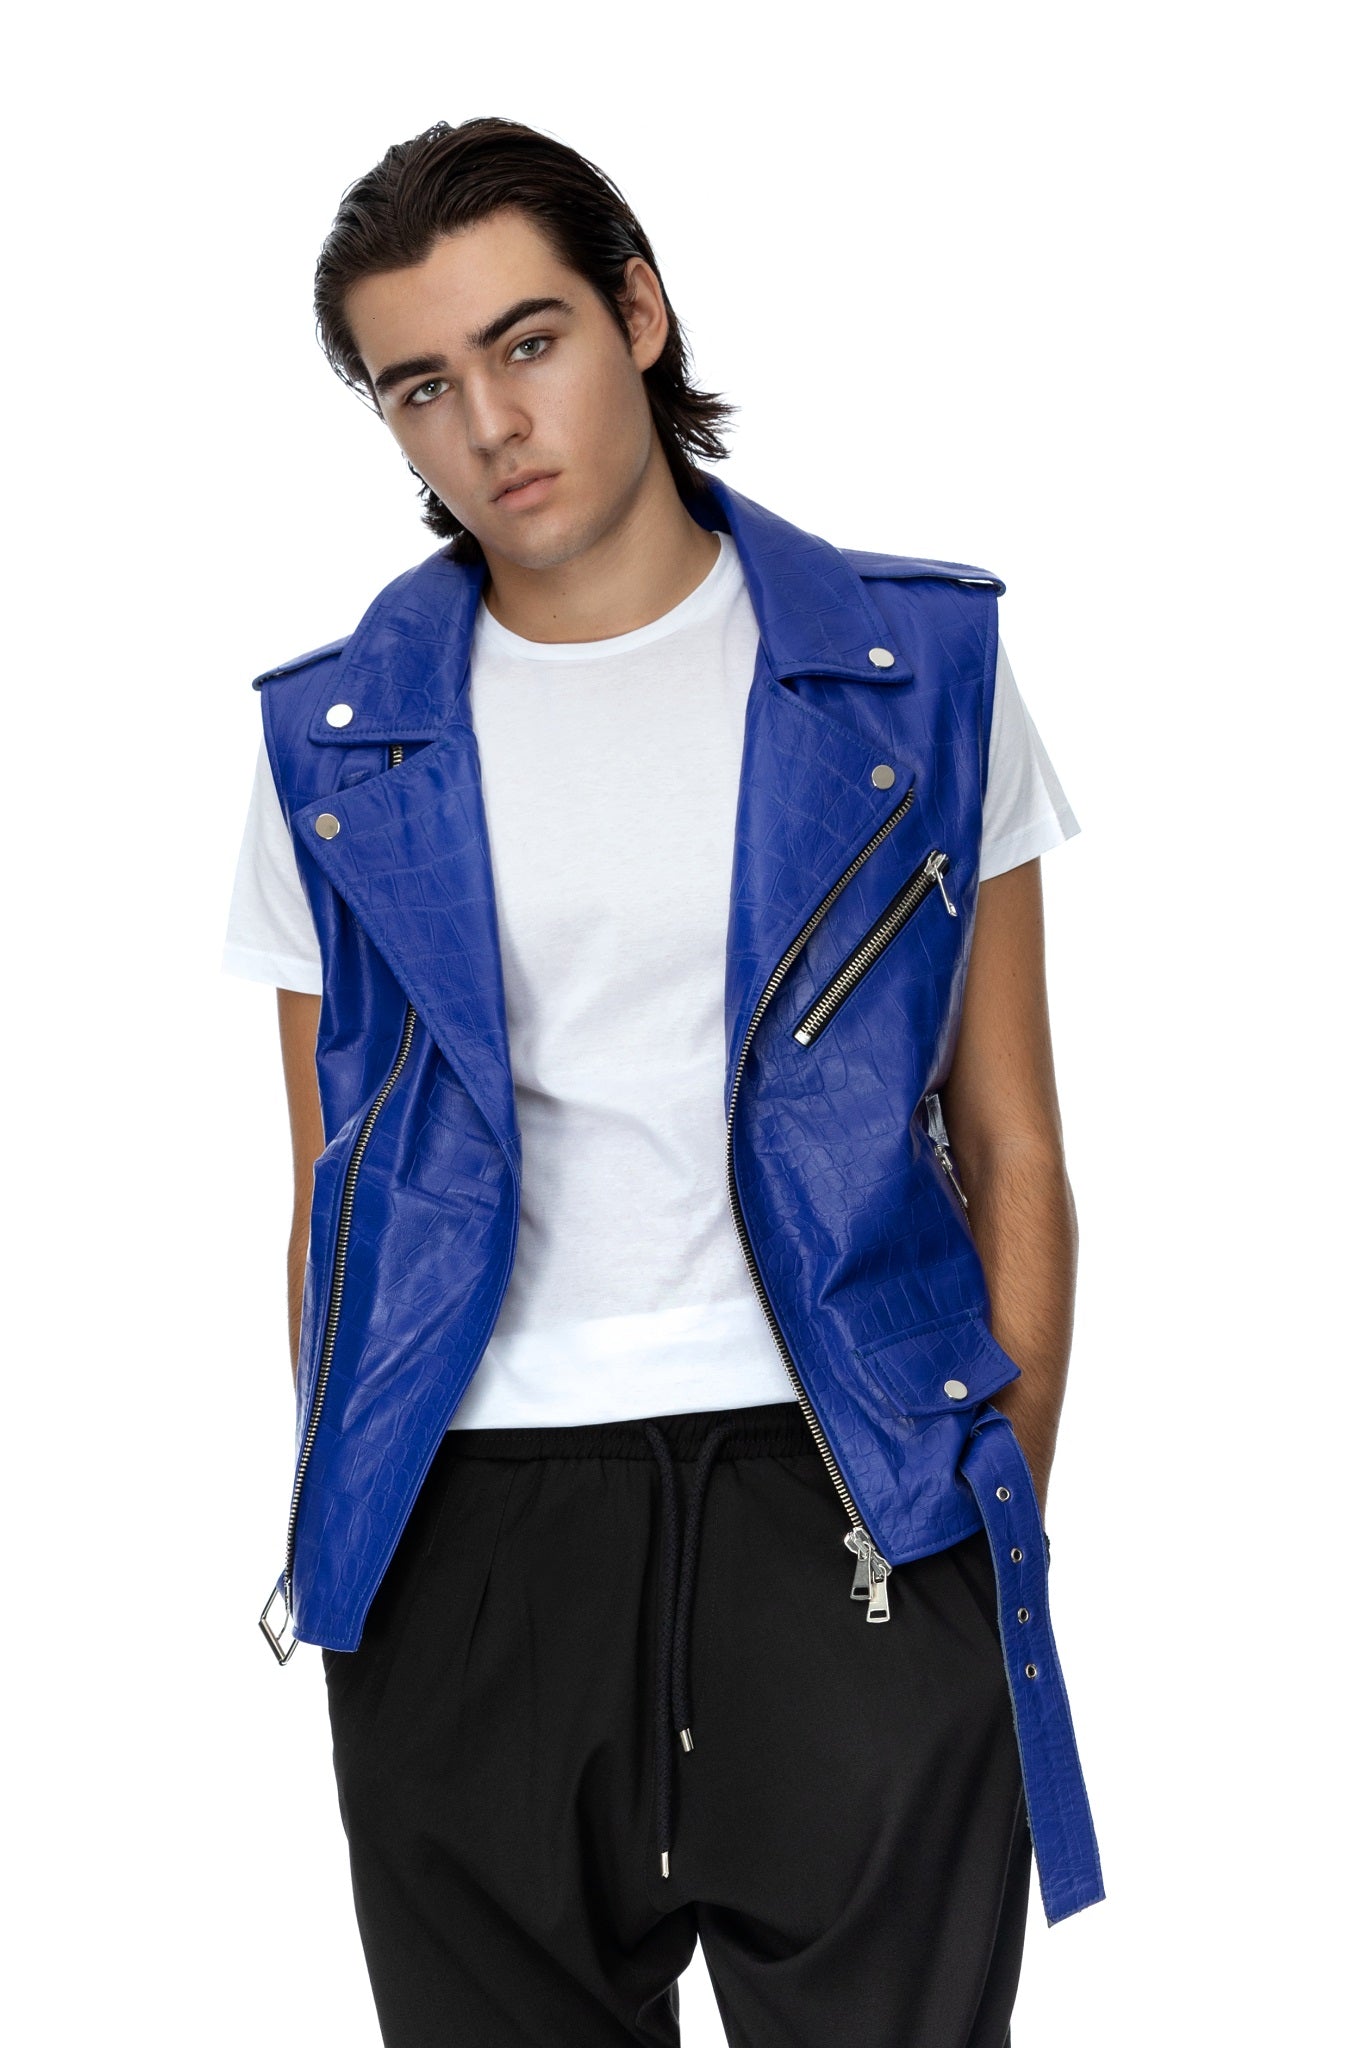 Blue leather biker vest